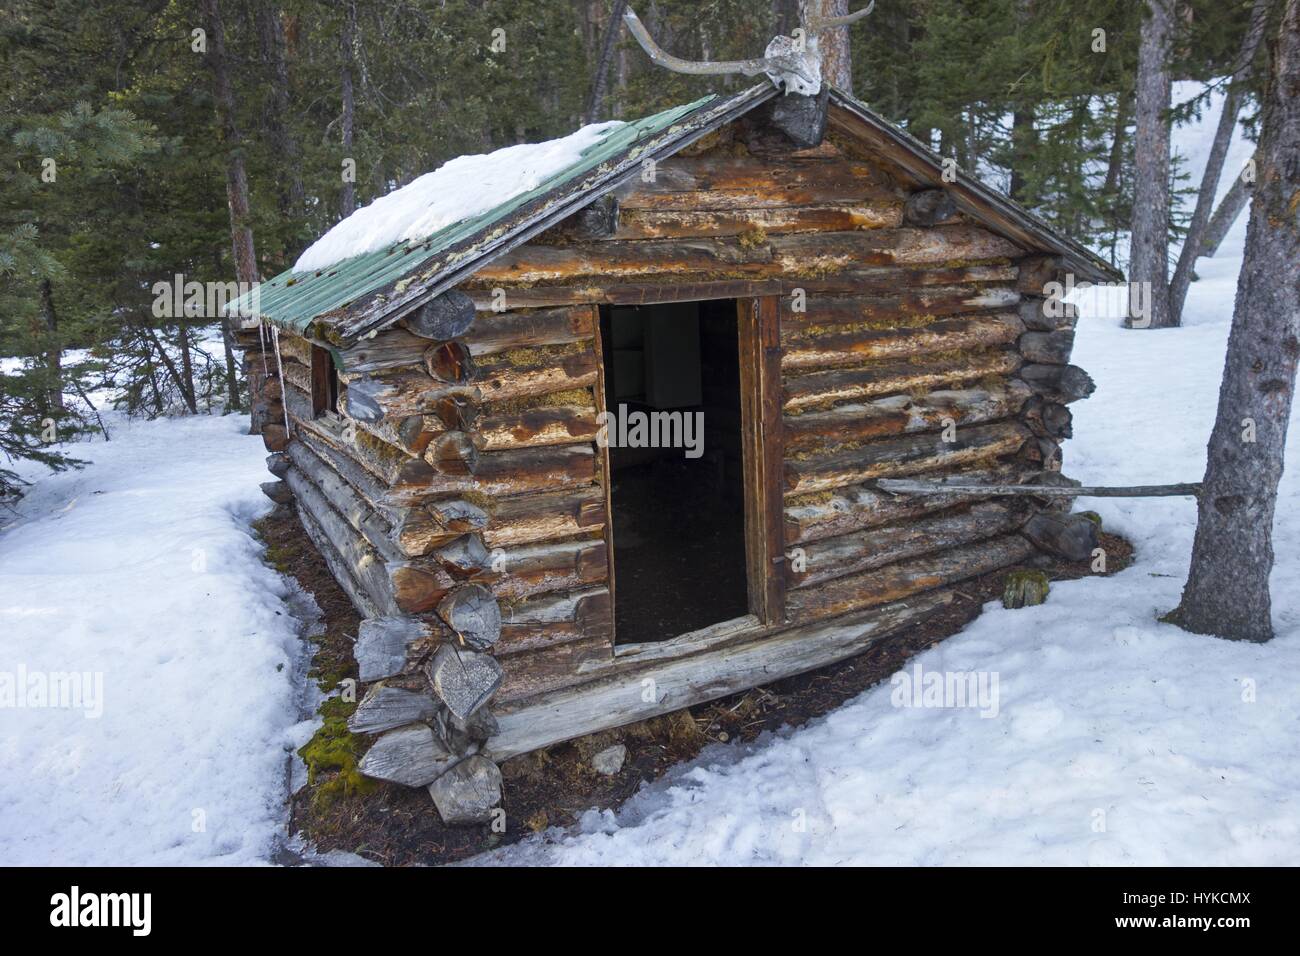 Ancienne cabine rustique Pioneer en bois de bois en rondins dans une forêt enneigée. Paysage d'hiver des montagnes Rocheuses canadiennes Parc national Banff Banque D'Images